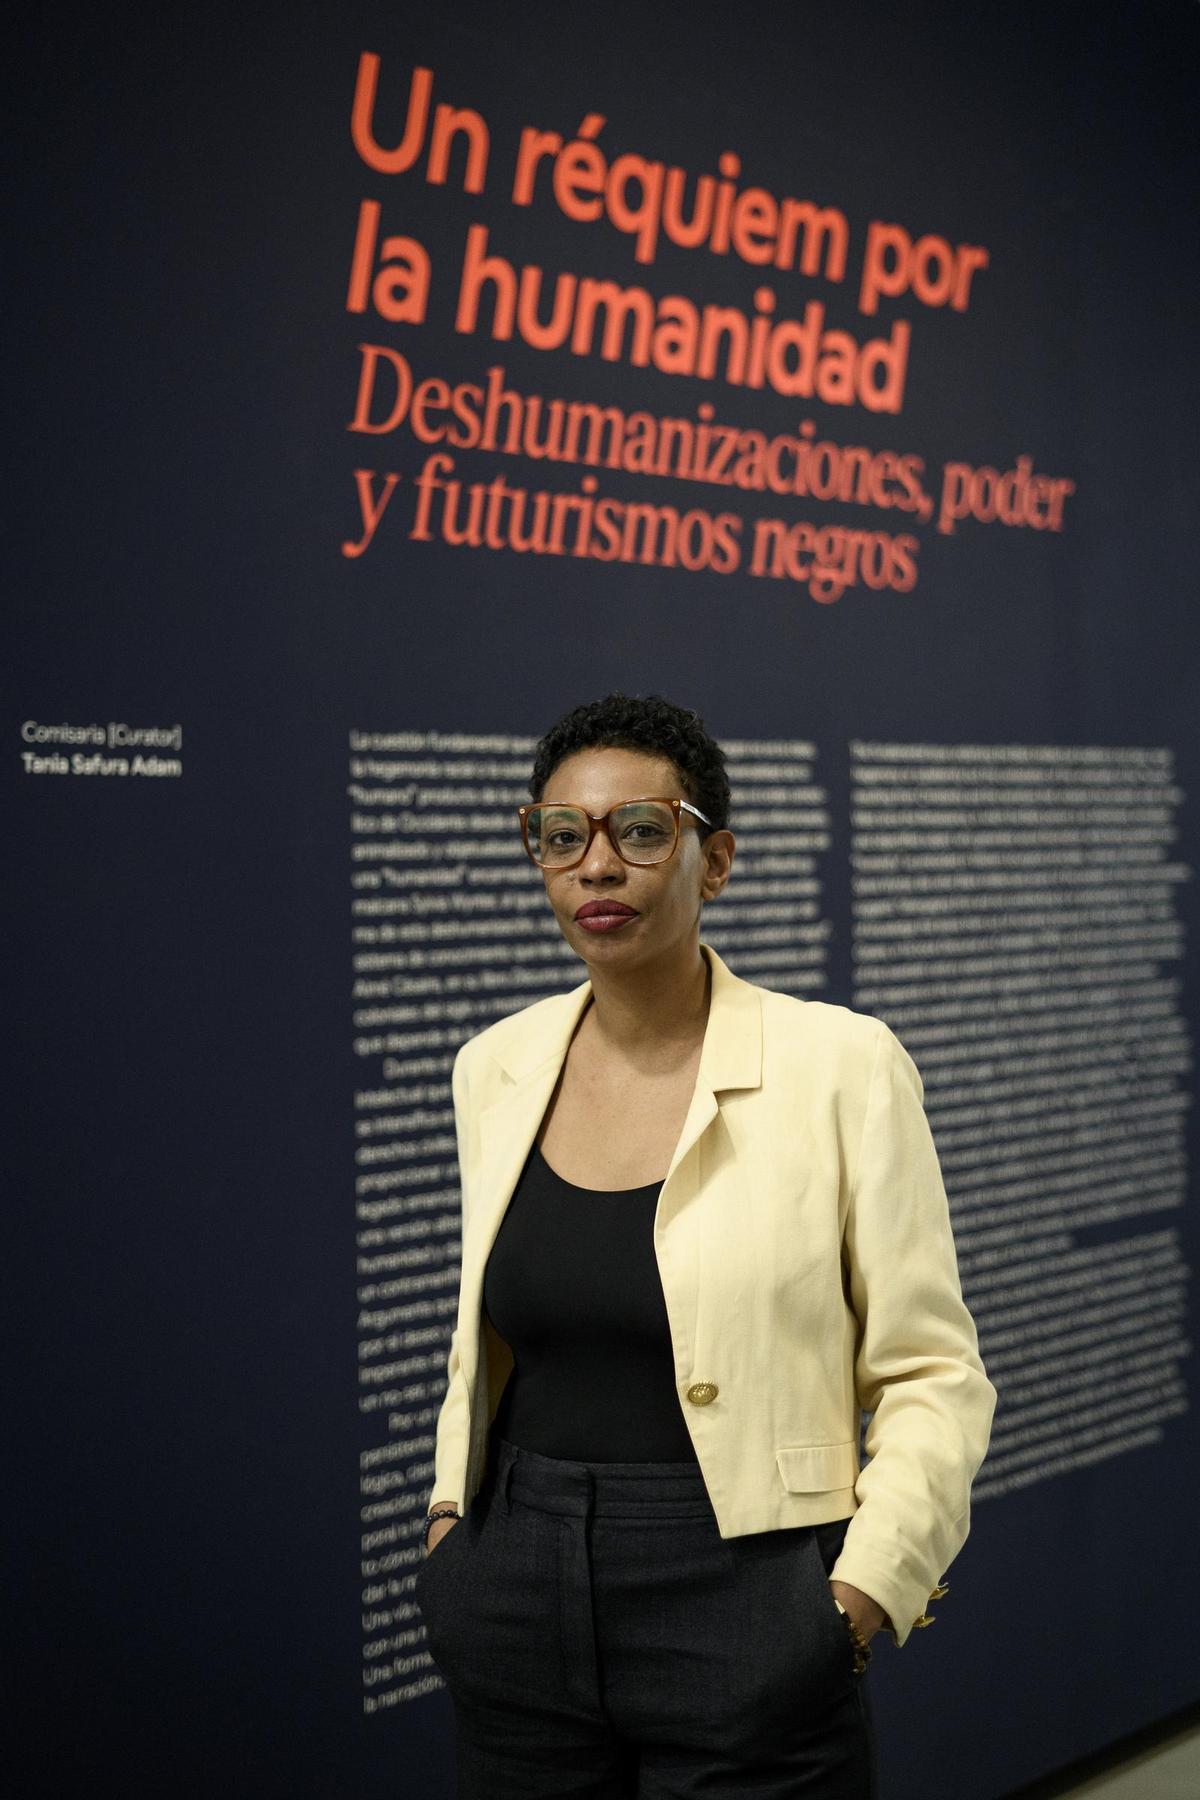 Tania Safura Adam , comisaria de la exposición 'Un réquiem por la humanidad'.